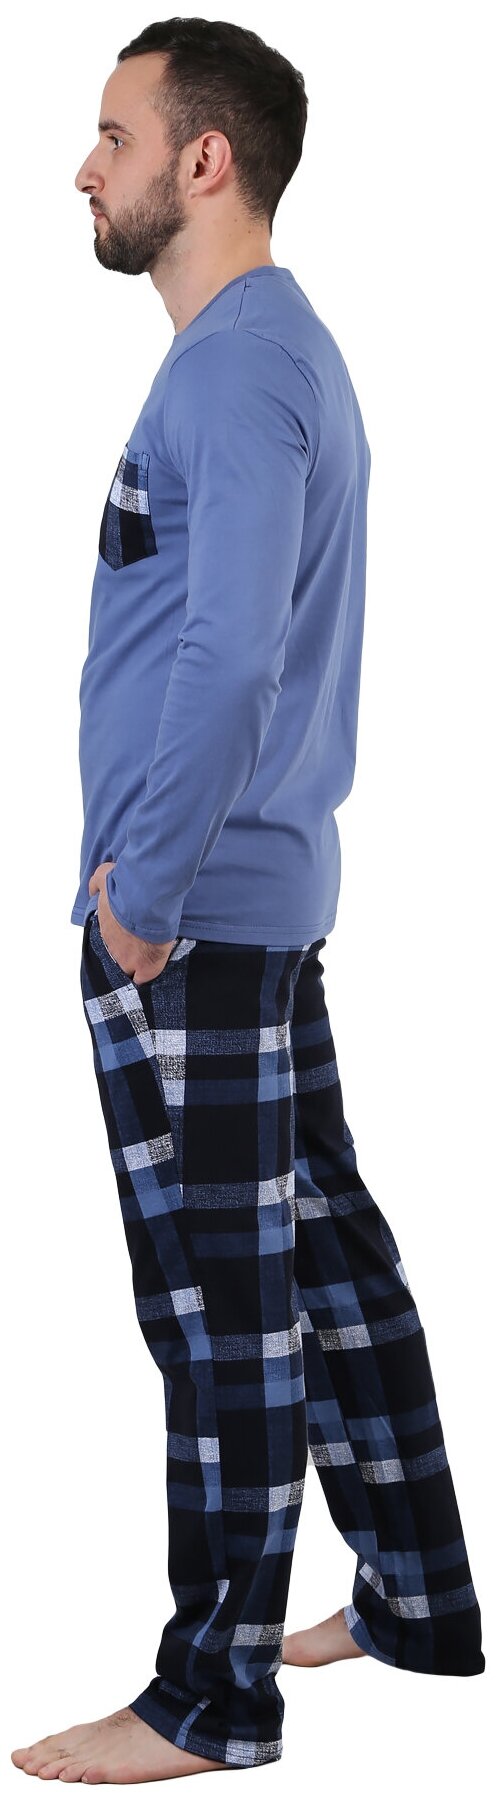 Мужская пижама брюки в клетку Горец Индиго размер 58 Кулирка Оптима трикотаж футболка с длиным рукавом округлым вырезом нагрудным карманом брюки пря - фотография № 2